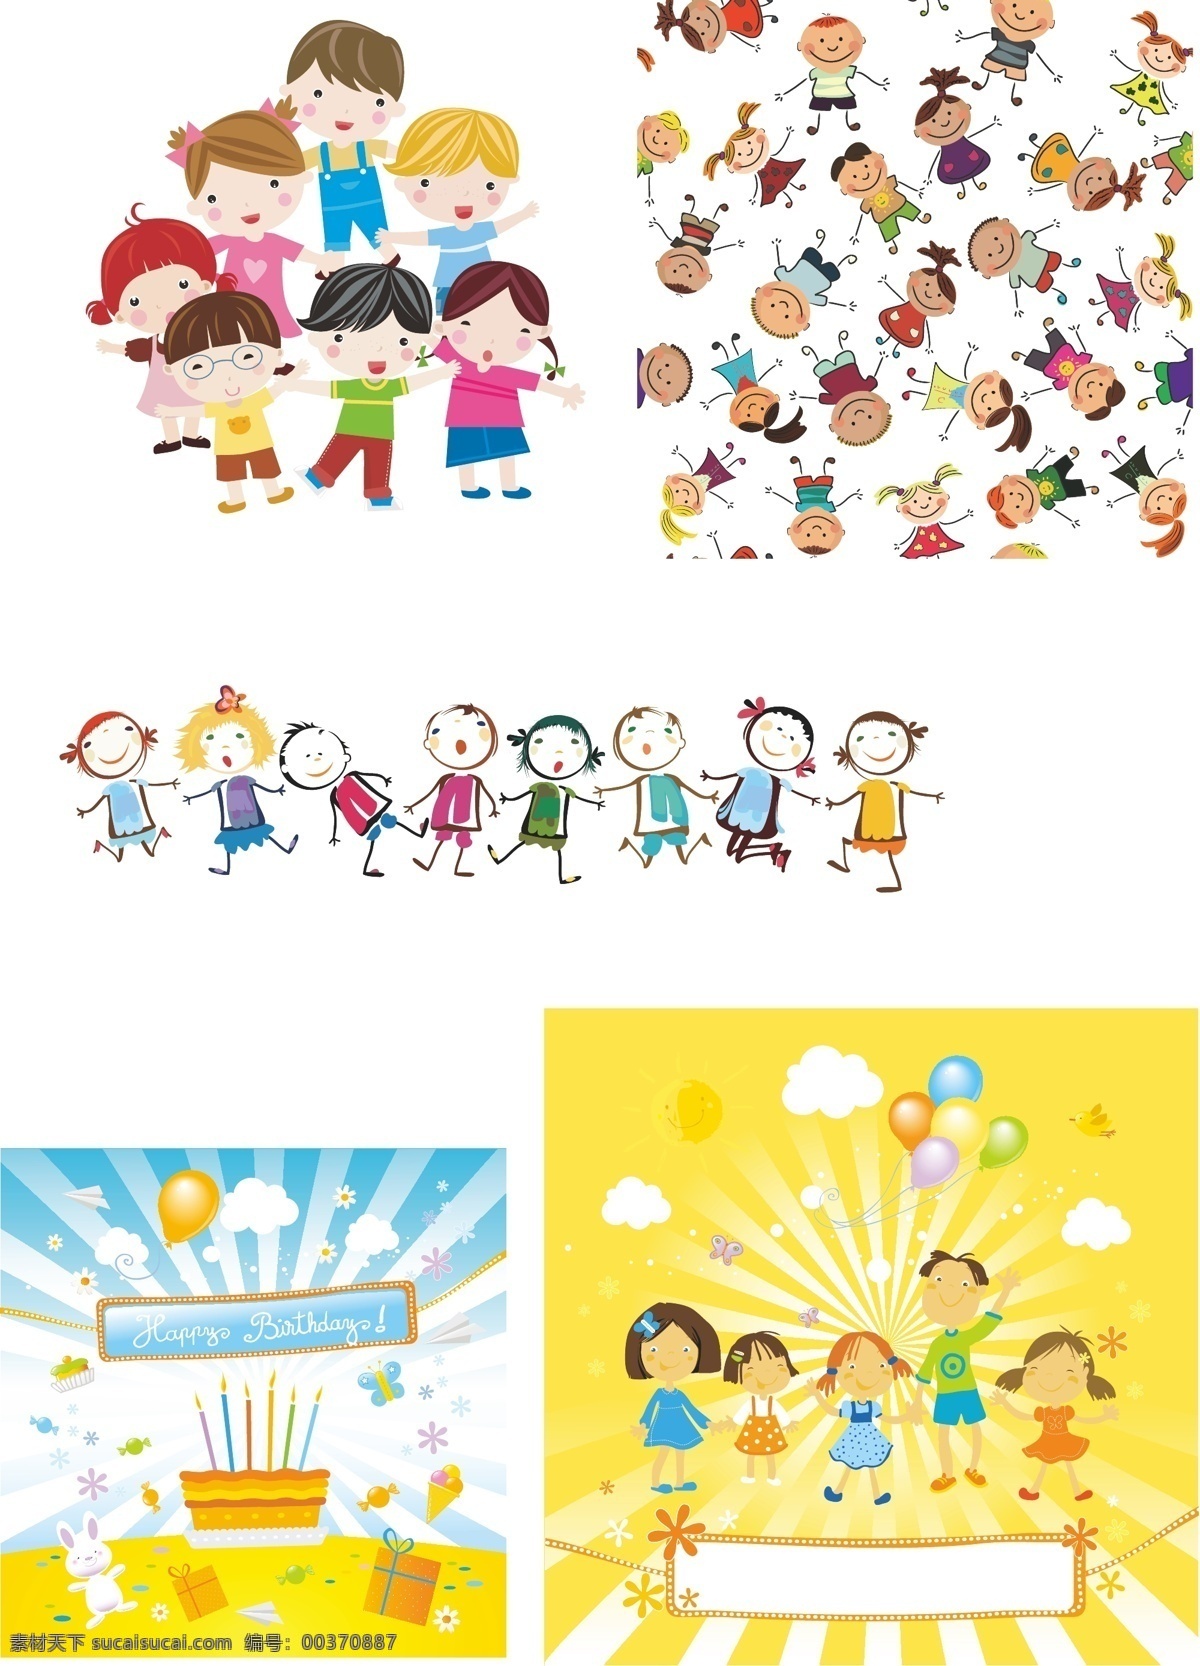 卡通人物形象 卡通 人物 形象 生日 蛋糕 背景 气球 欢乐 家庭 白色